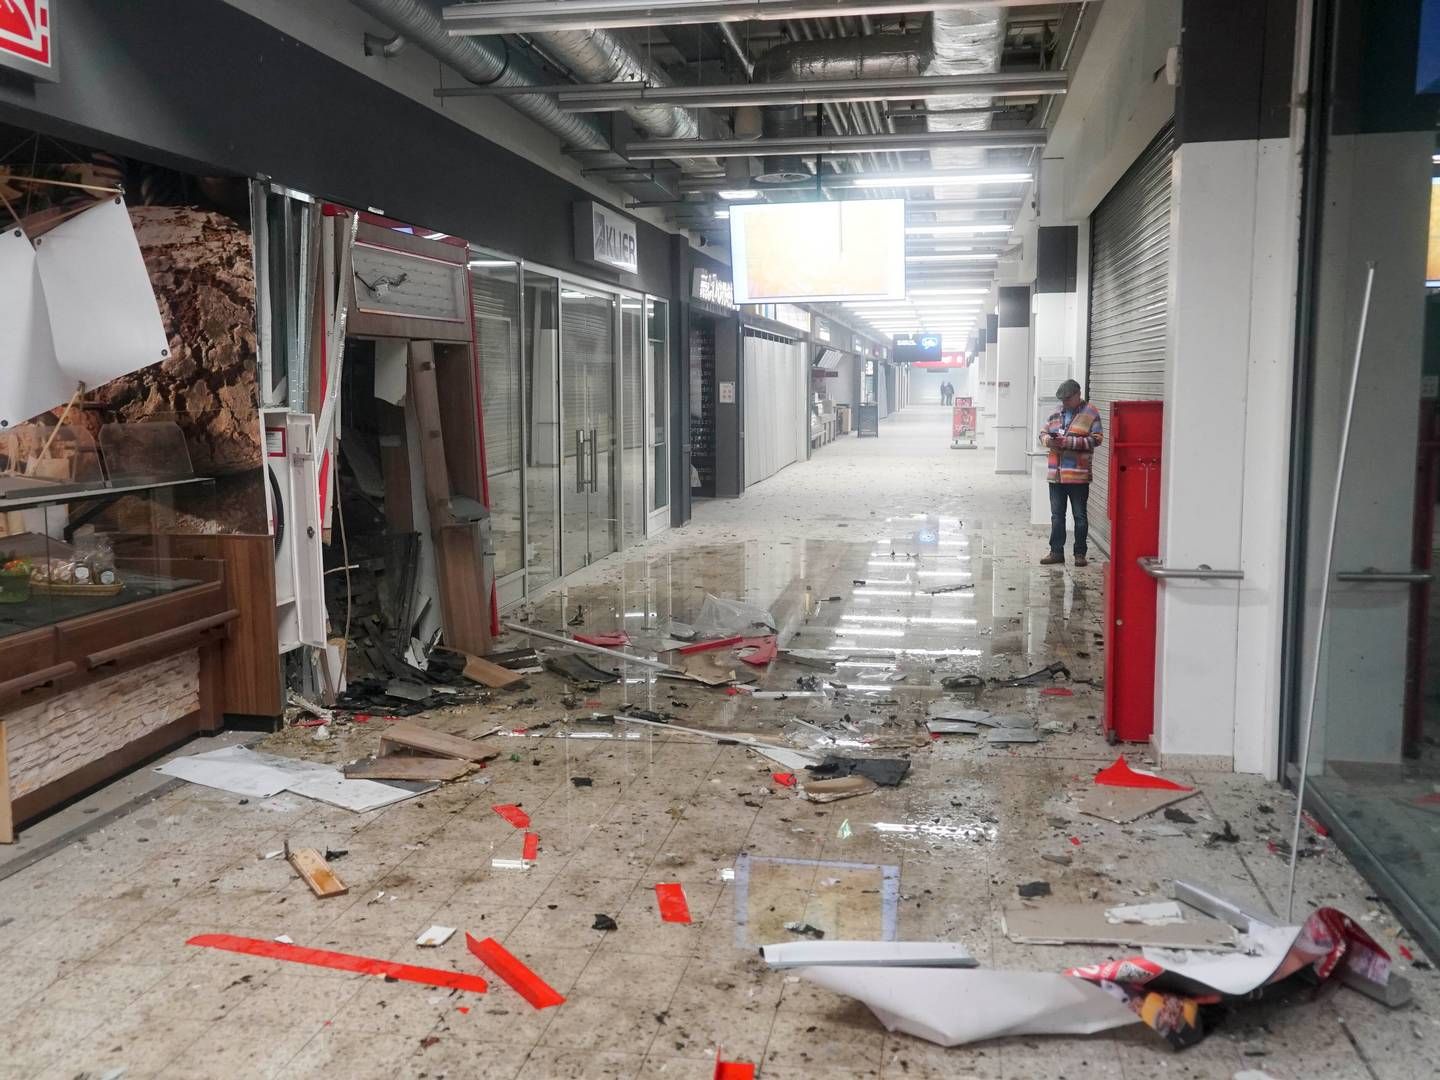 Doppelschlag: Zwei Geldautomaten wurden in einem Einkaufszentrum in Oststeinbek bei Hamburg am 20. März gesprengt. Sie waren im Abstand von 100 Metern aufgebaut. Die Täter flüchteten über die nahe Autobahn. Aufgrund von Gebäudebeschädigungen blieb das Einkaufszentrum zunächst geschlossen.